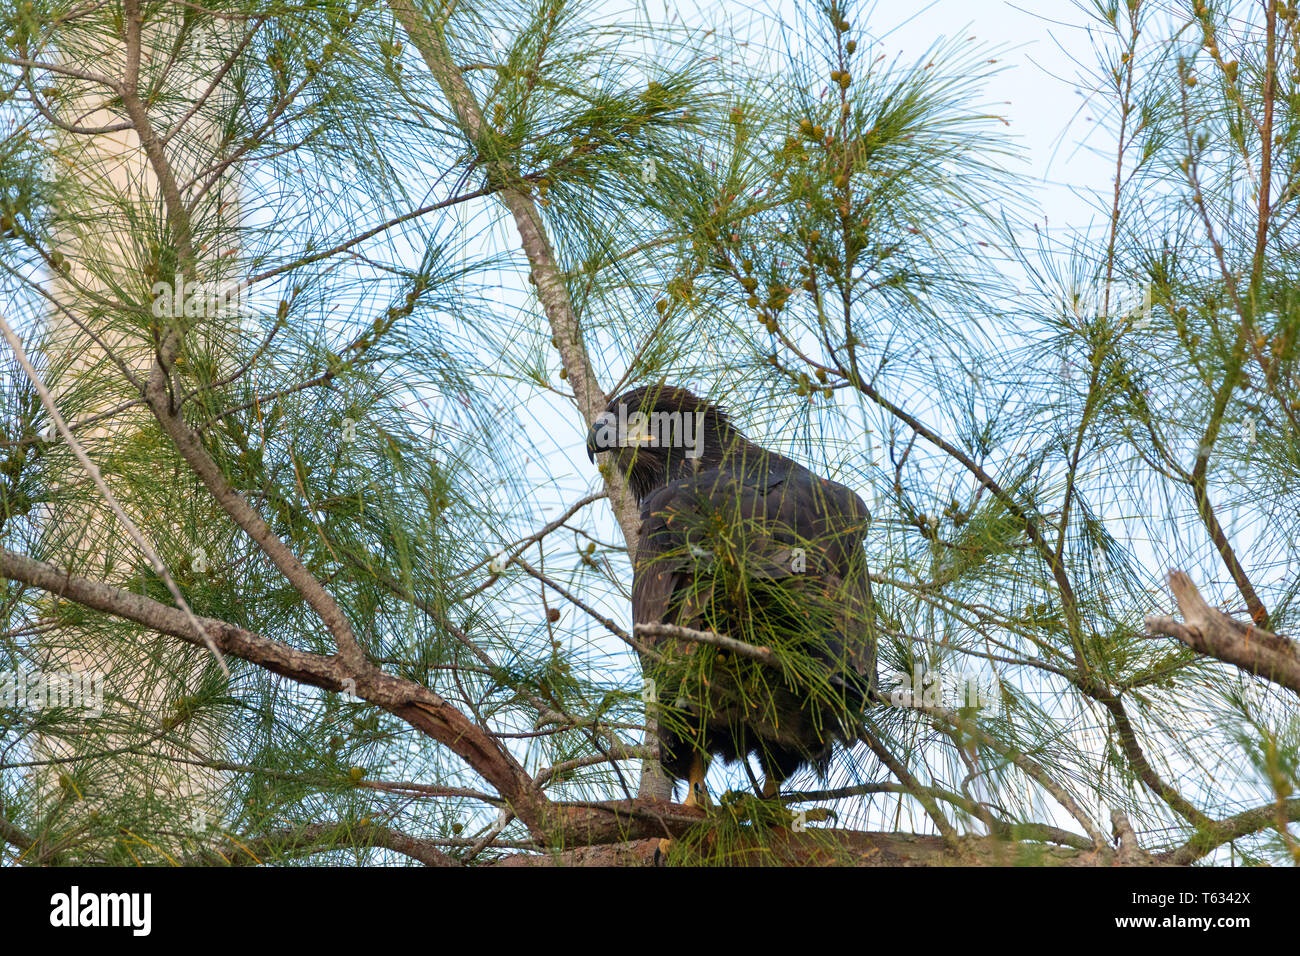 Sentado en una rama después de abandonar el nido, un adolescente joven aguilucho cabeciblanca Haliaeetus leucocephalus intenta obtener la energía para volver Marco Island, Foto de stock